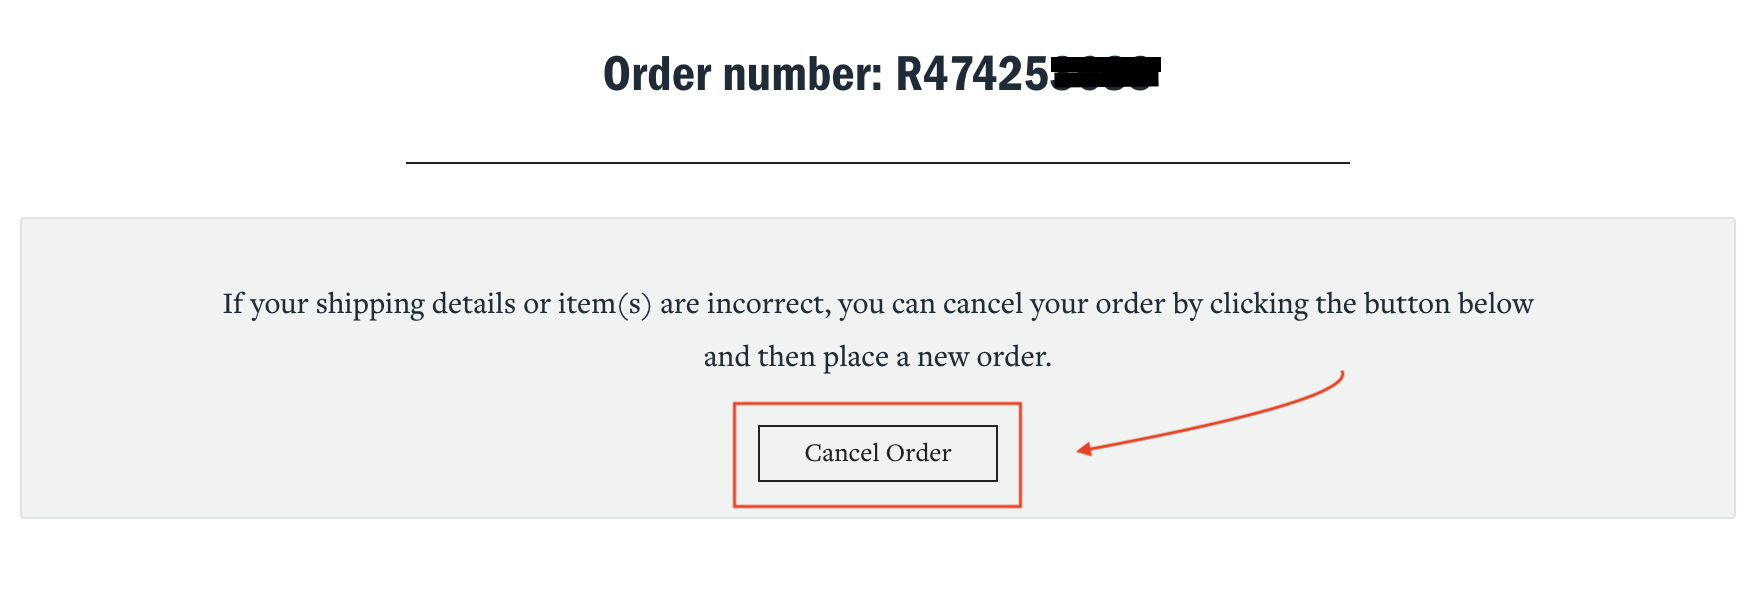 Order_Confirmation_-_Cancel_Order.png